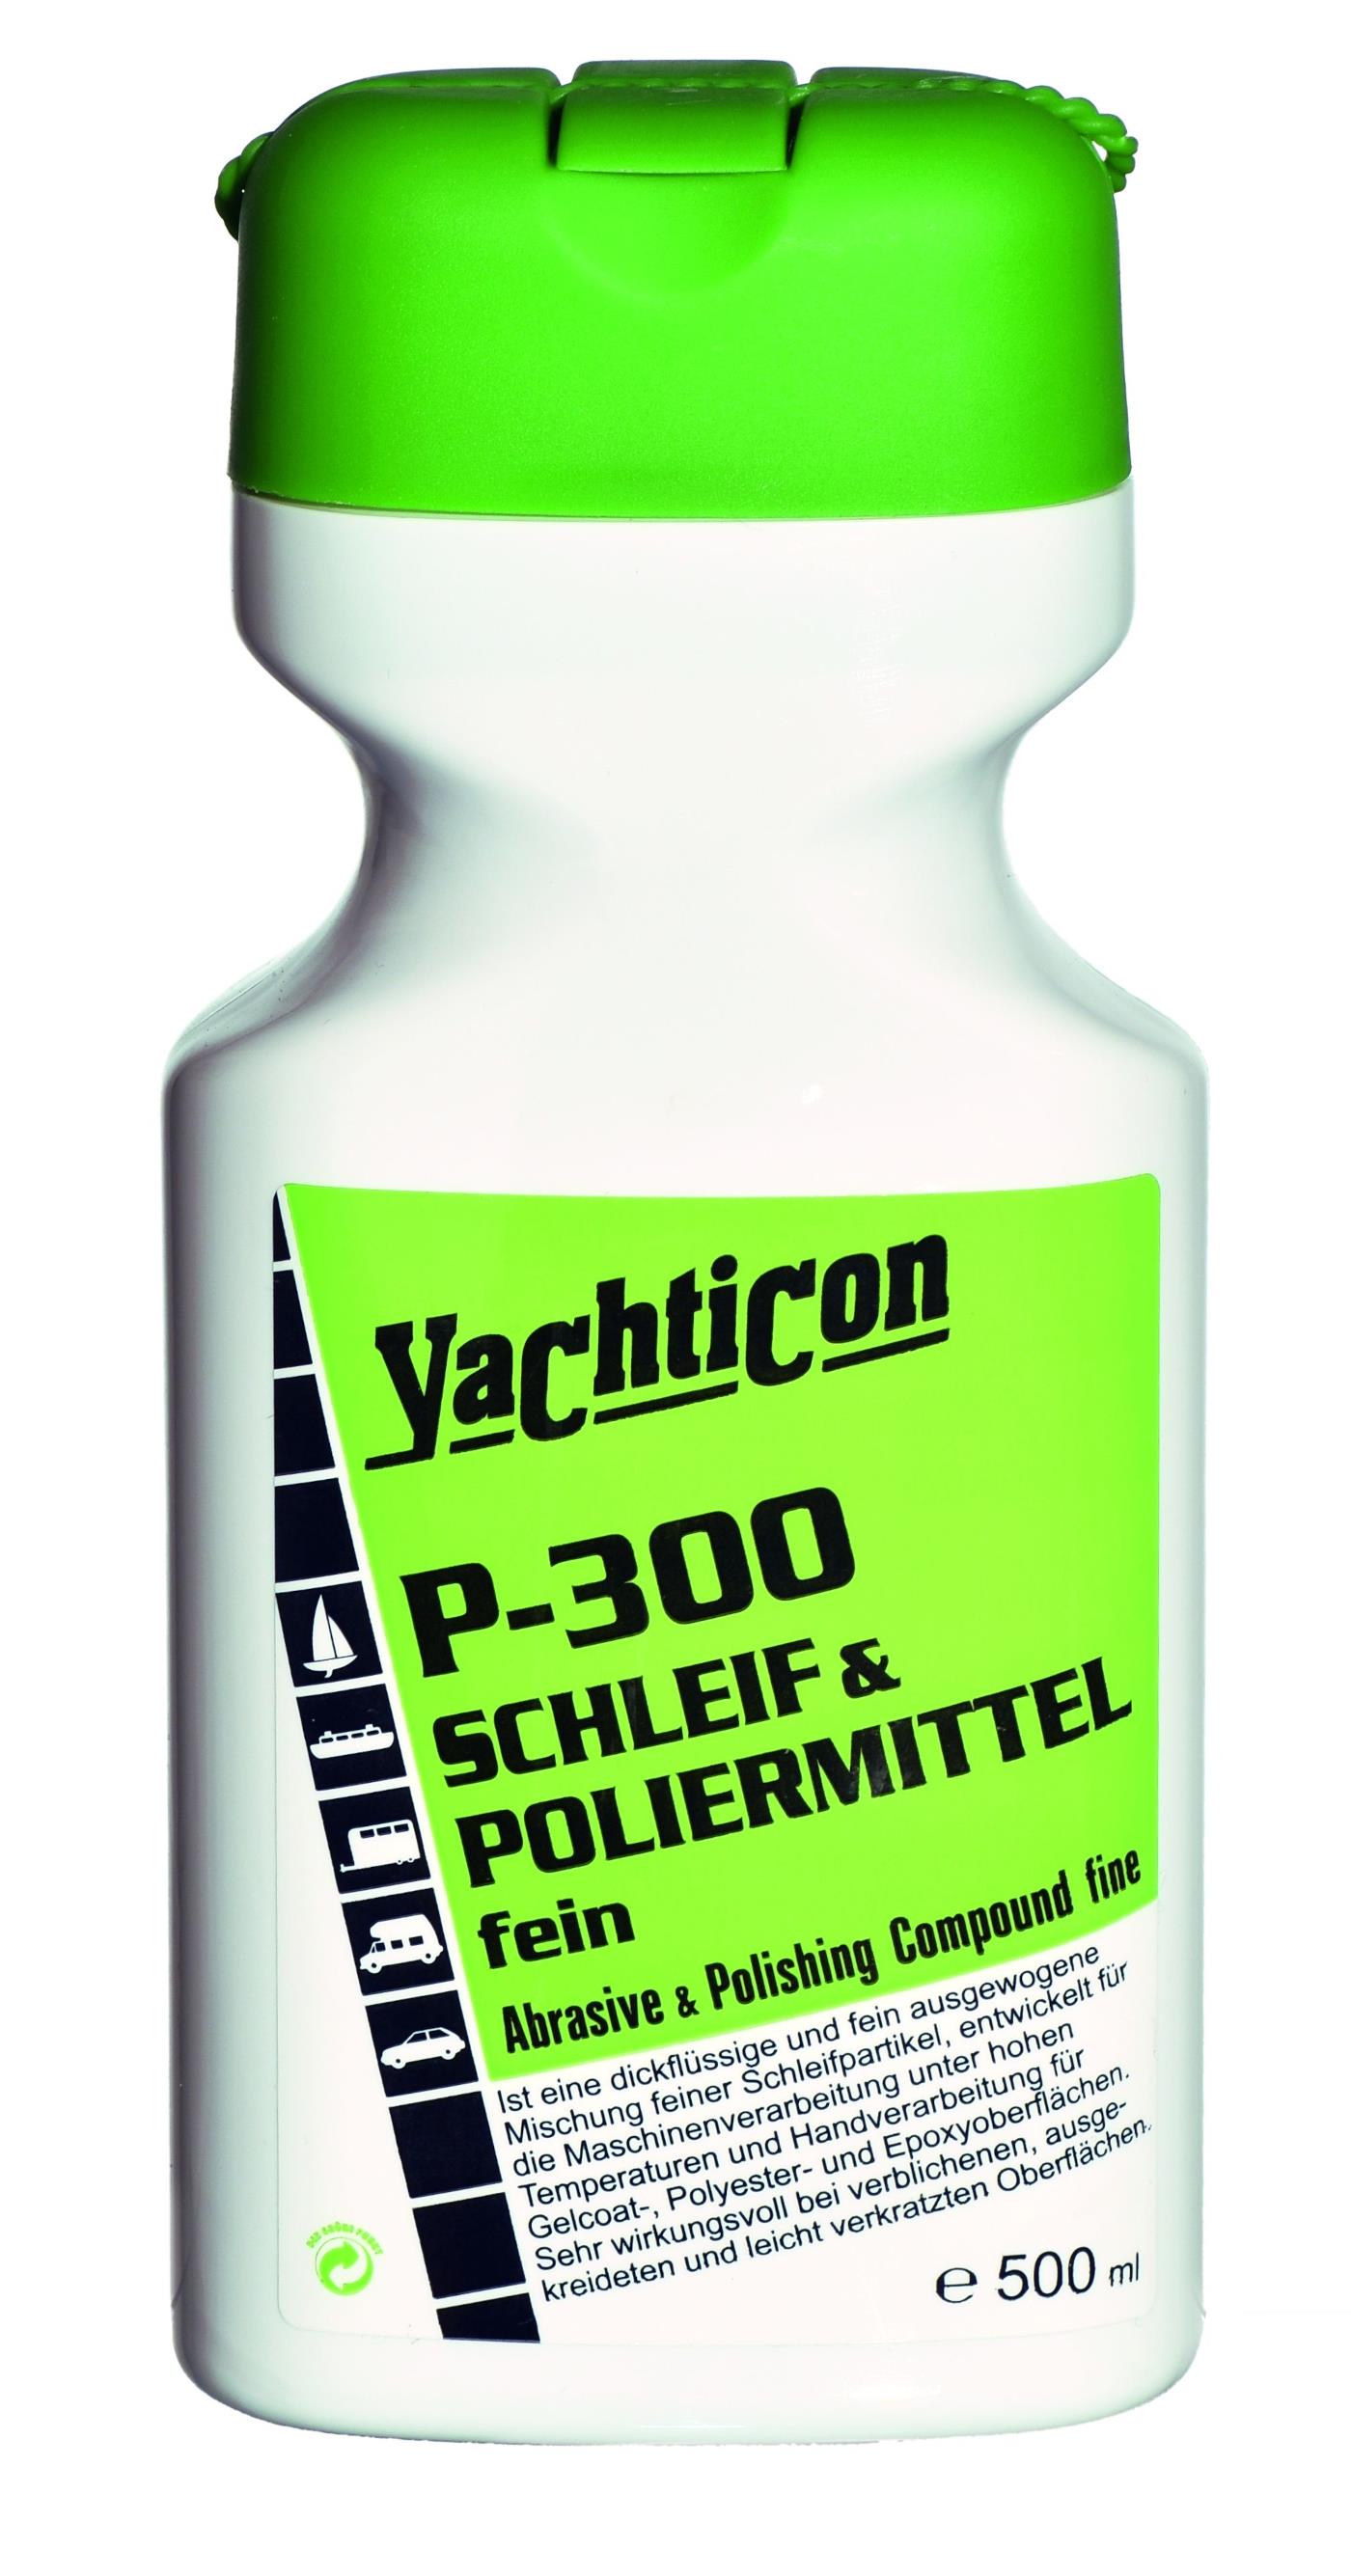 Yachticon P-300 Schleif- und Poliermittel fein 500 ml